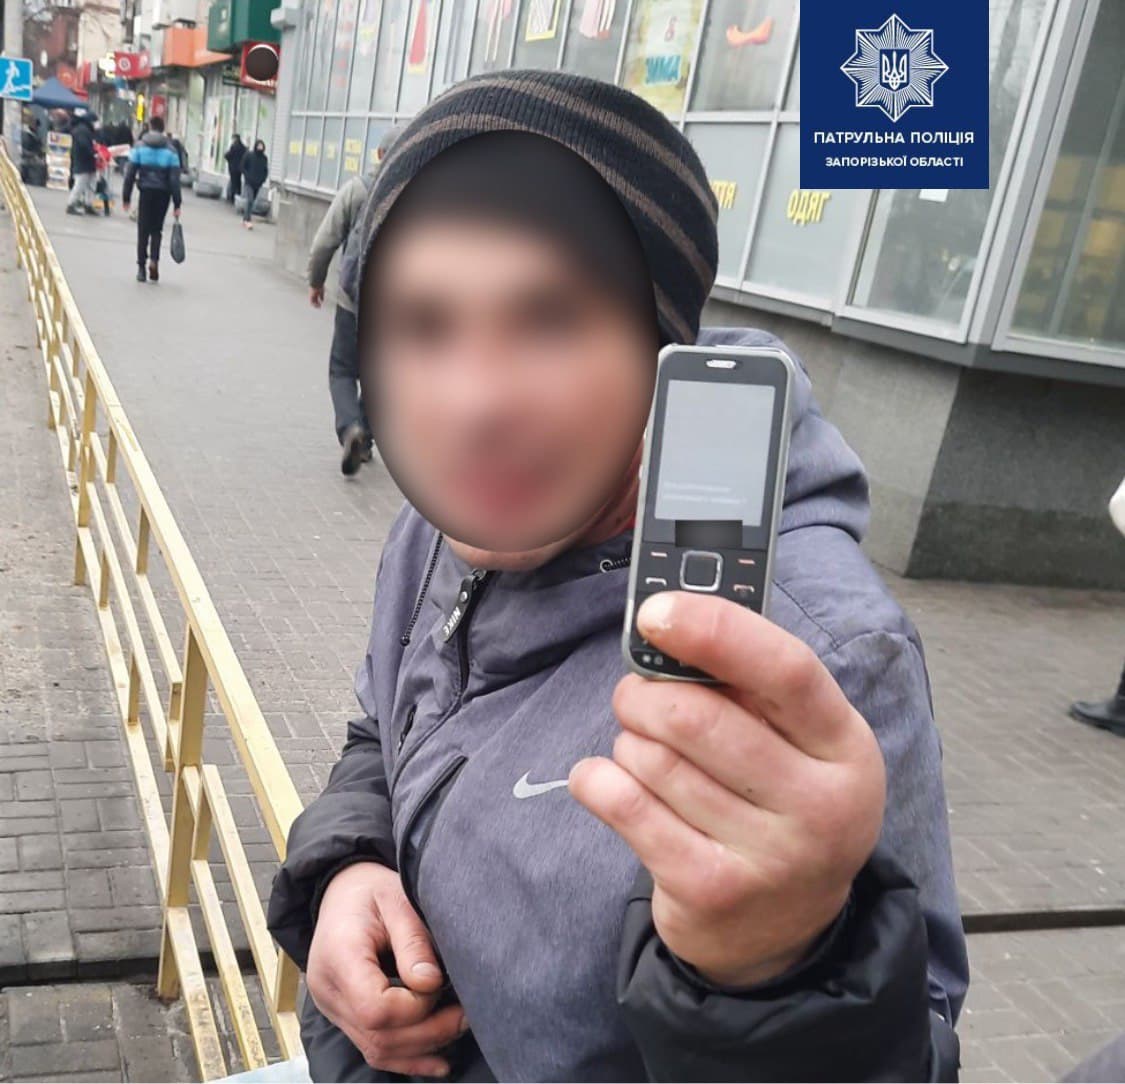 Избили и украли телефон: в центре Запорожья полиция поймала пару грабителей (ФОТО)